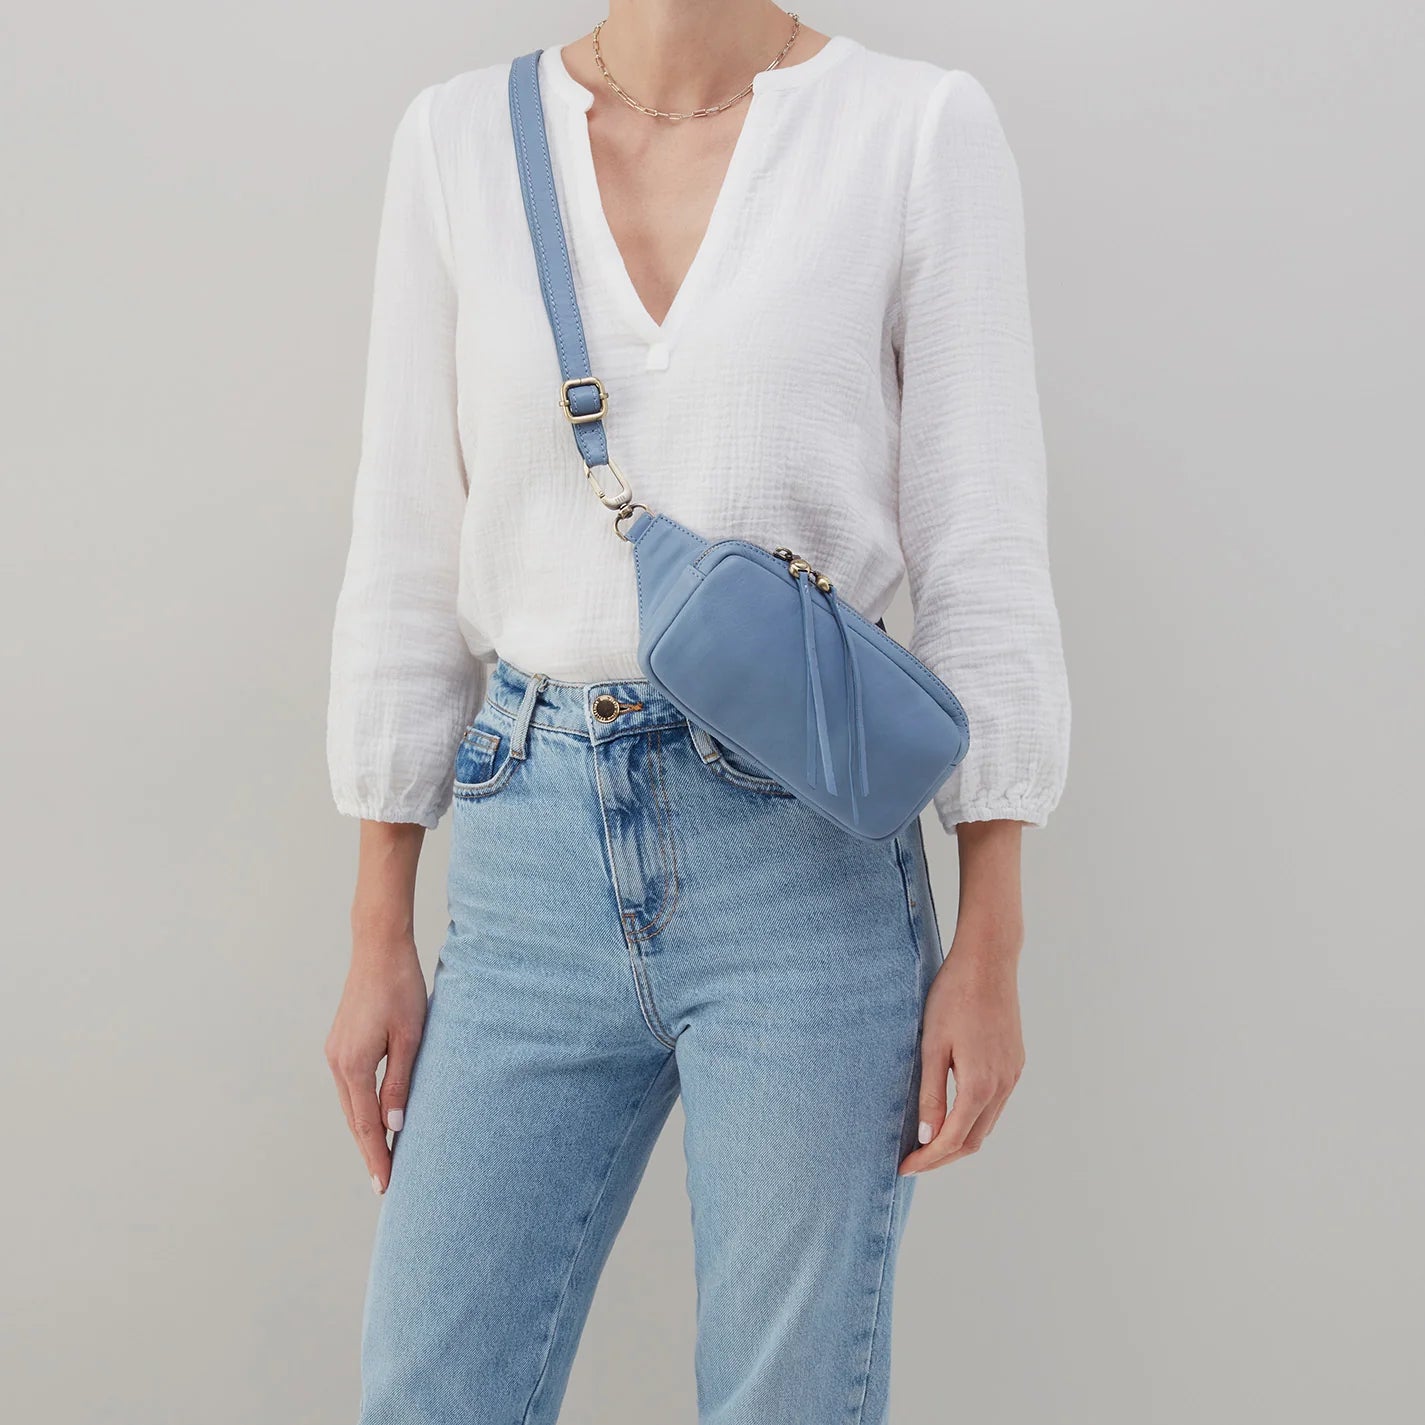 Hobo Bags Shaker Belt Bag Worn on Model as Cross Body Bag - Soft Leather -Provence